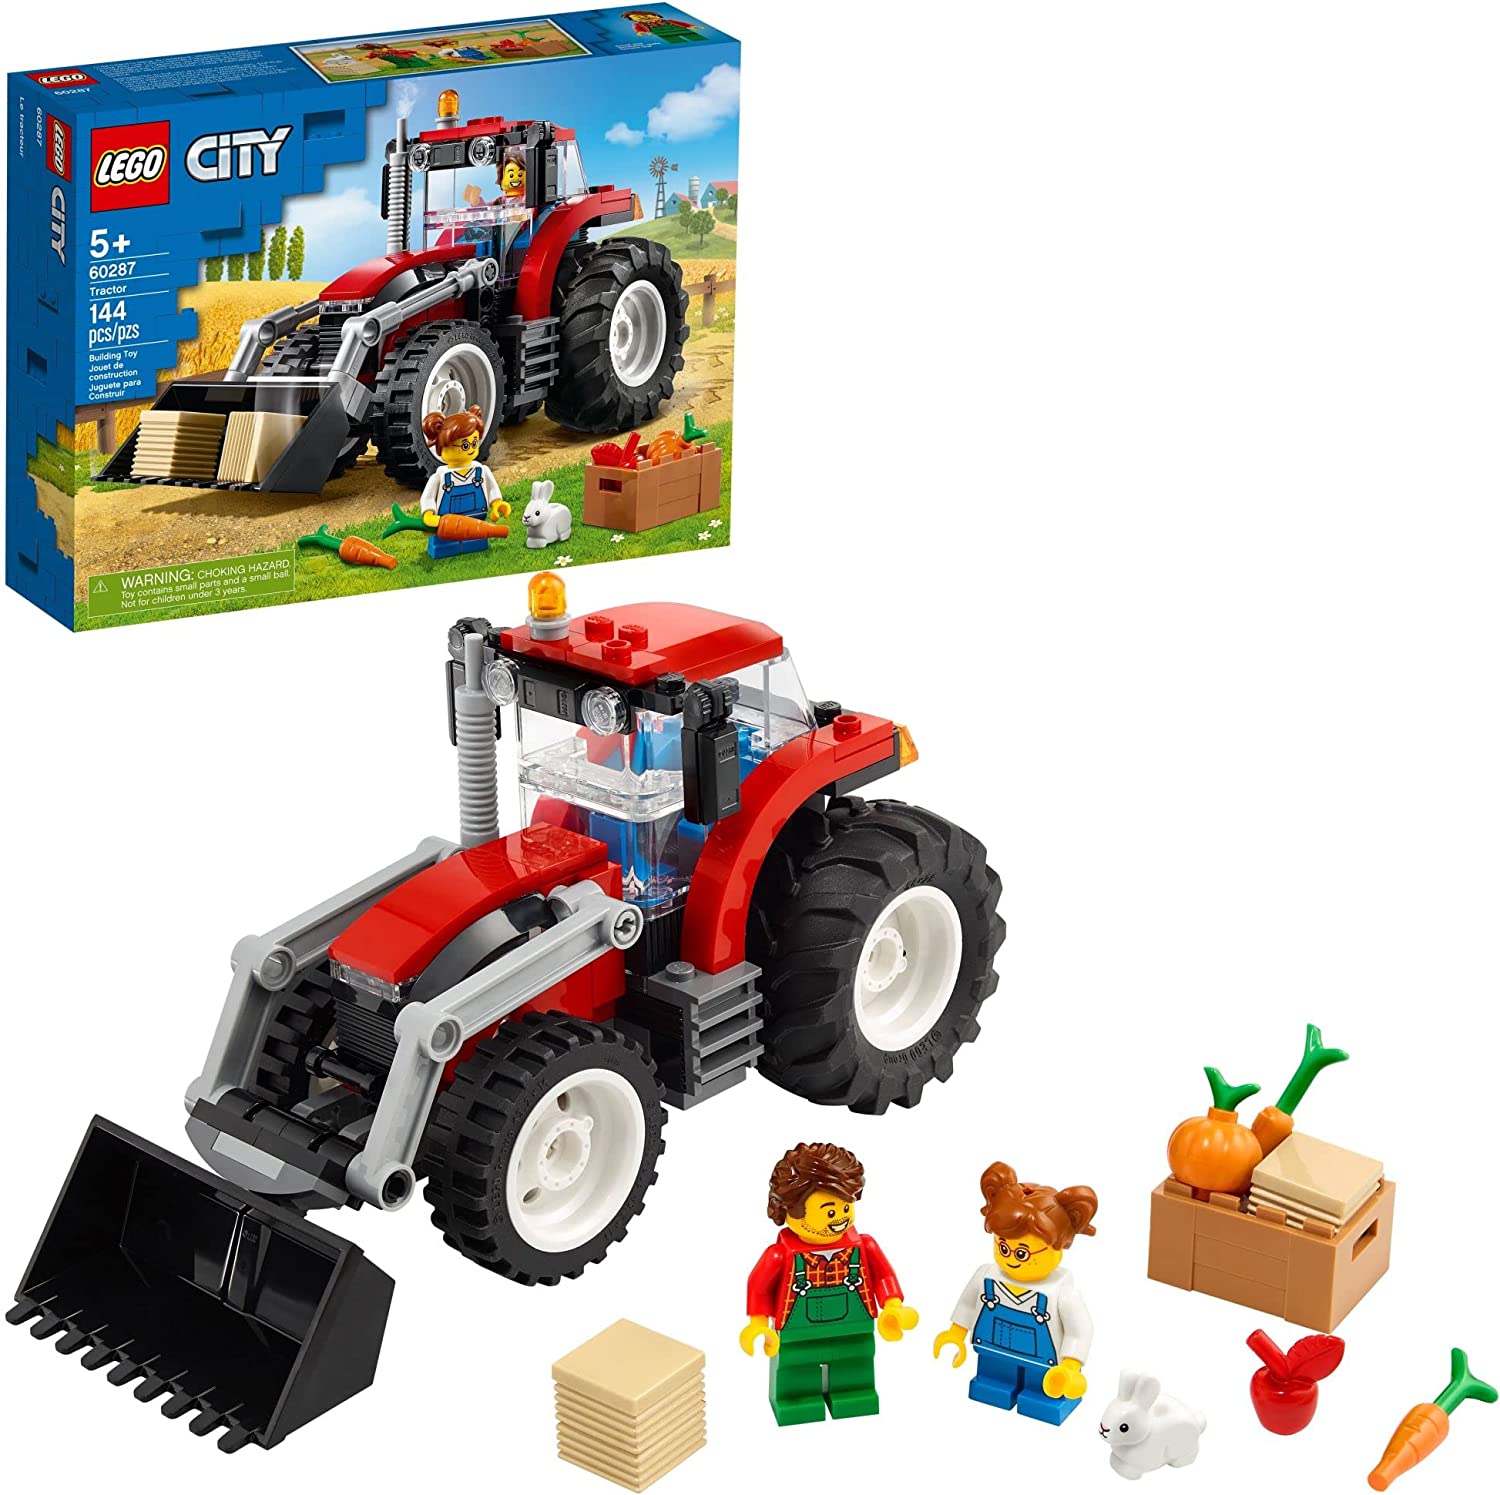 LEGO City Tractor #60287